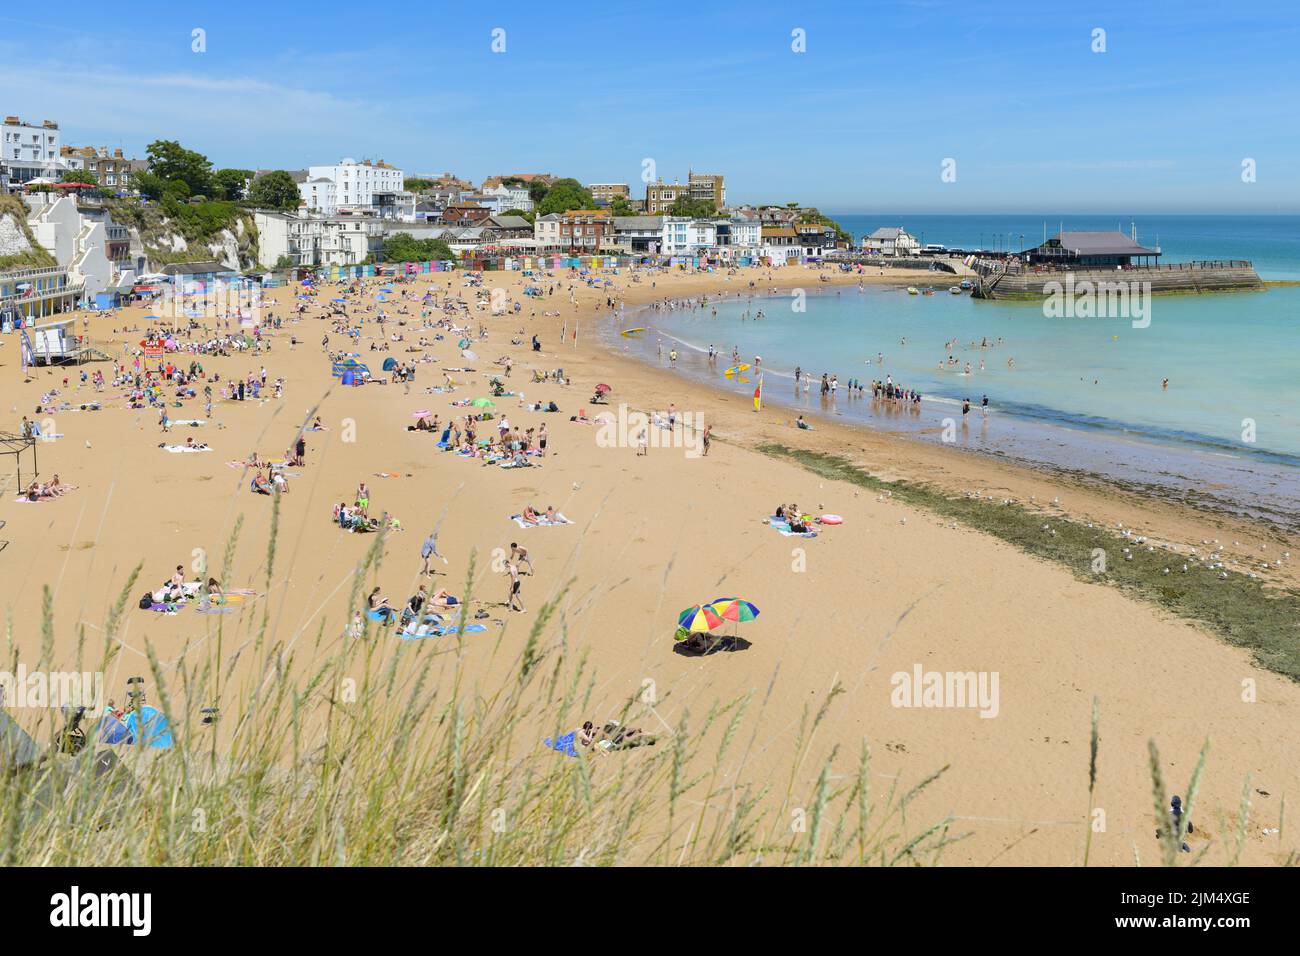 Broadescaliers Viking Bay Beach en été, Kent, Angleterre, Royaume-Uni Banque D'Images